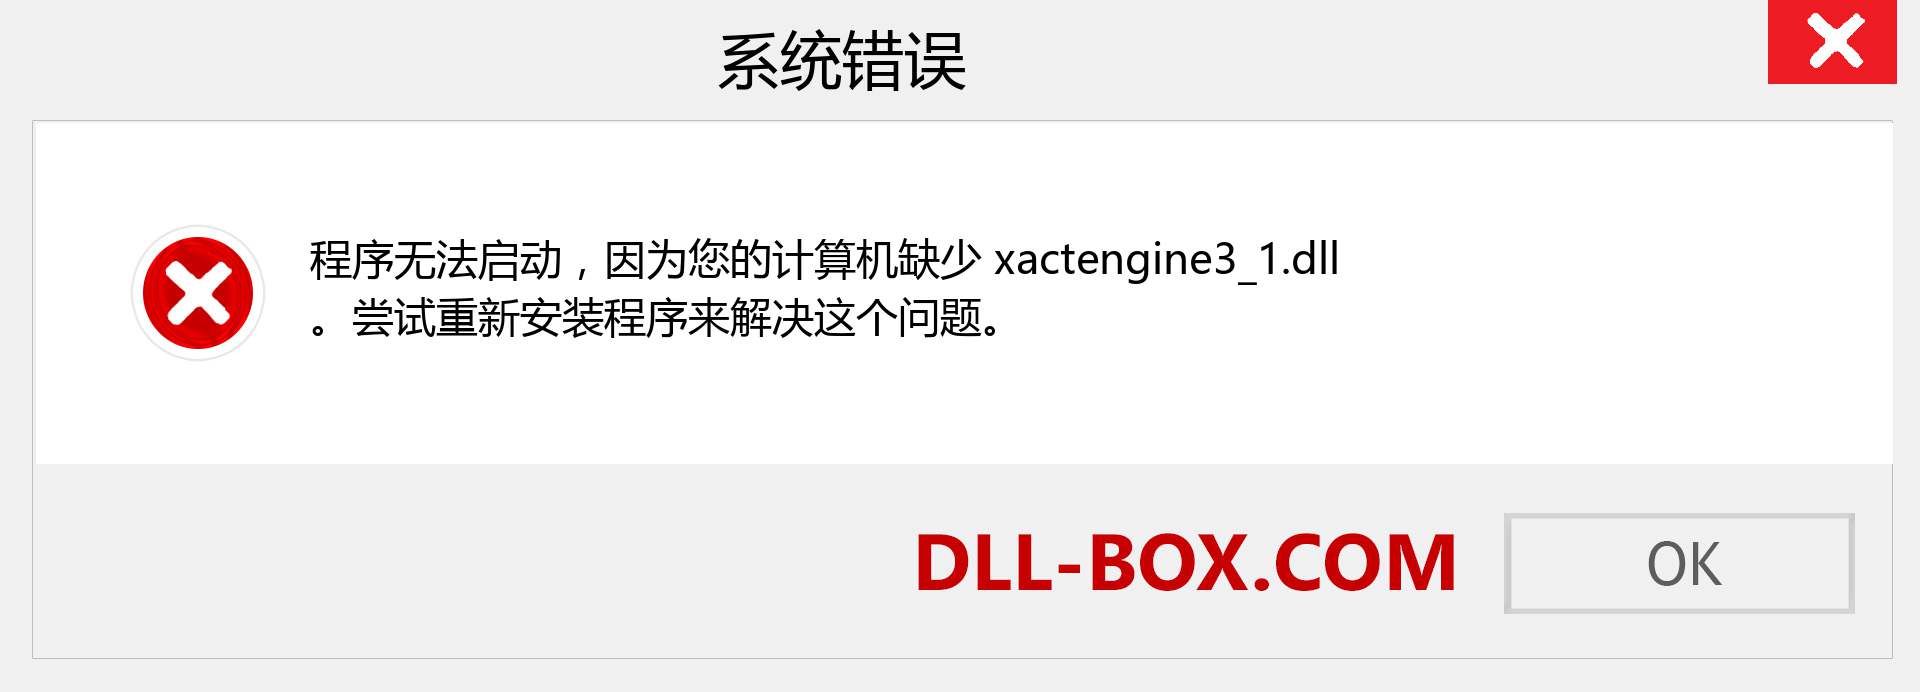 xactengine3_1.dll 文件丢失？。 适用于 Windows 7、8、10 的下载 - 修复 Windows、照片、图像上的 xactengine3_1 dll 丢失错误